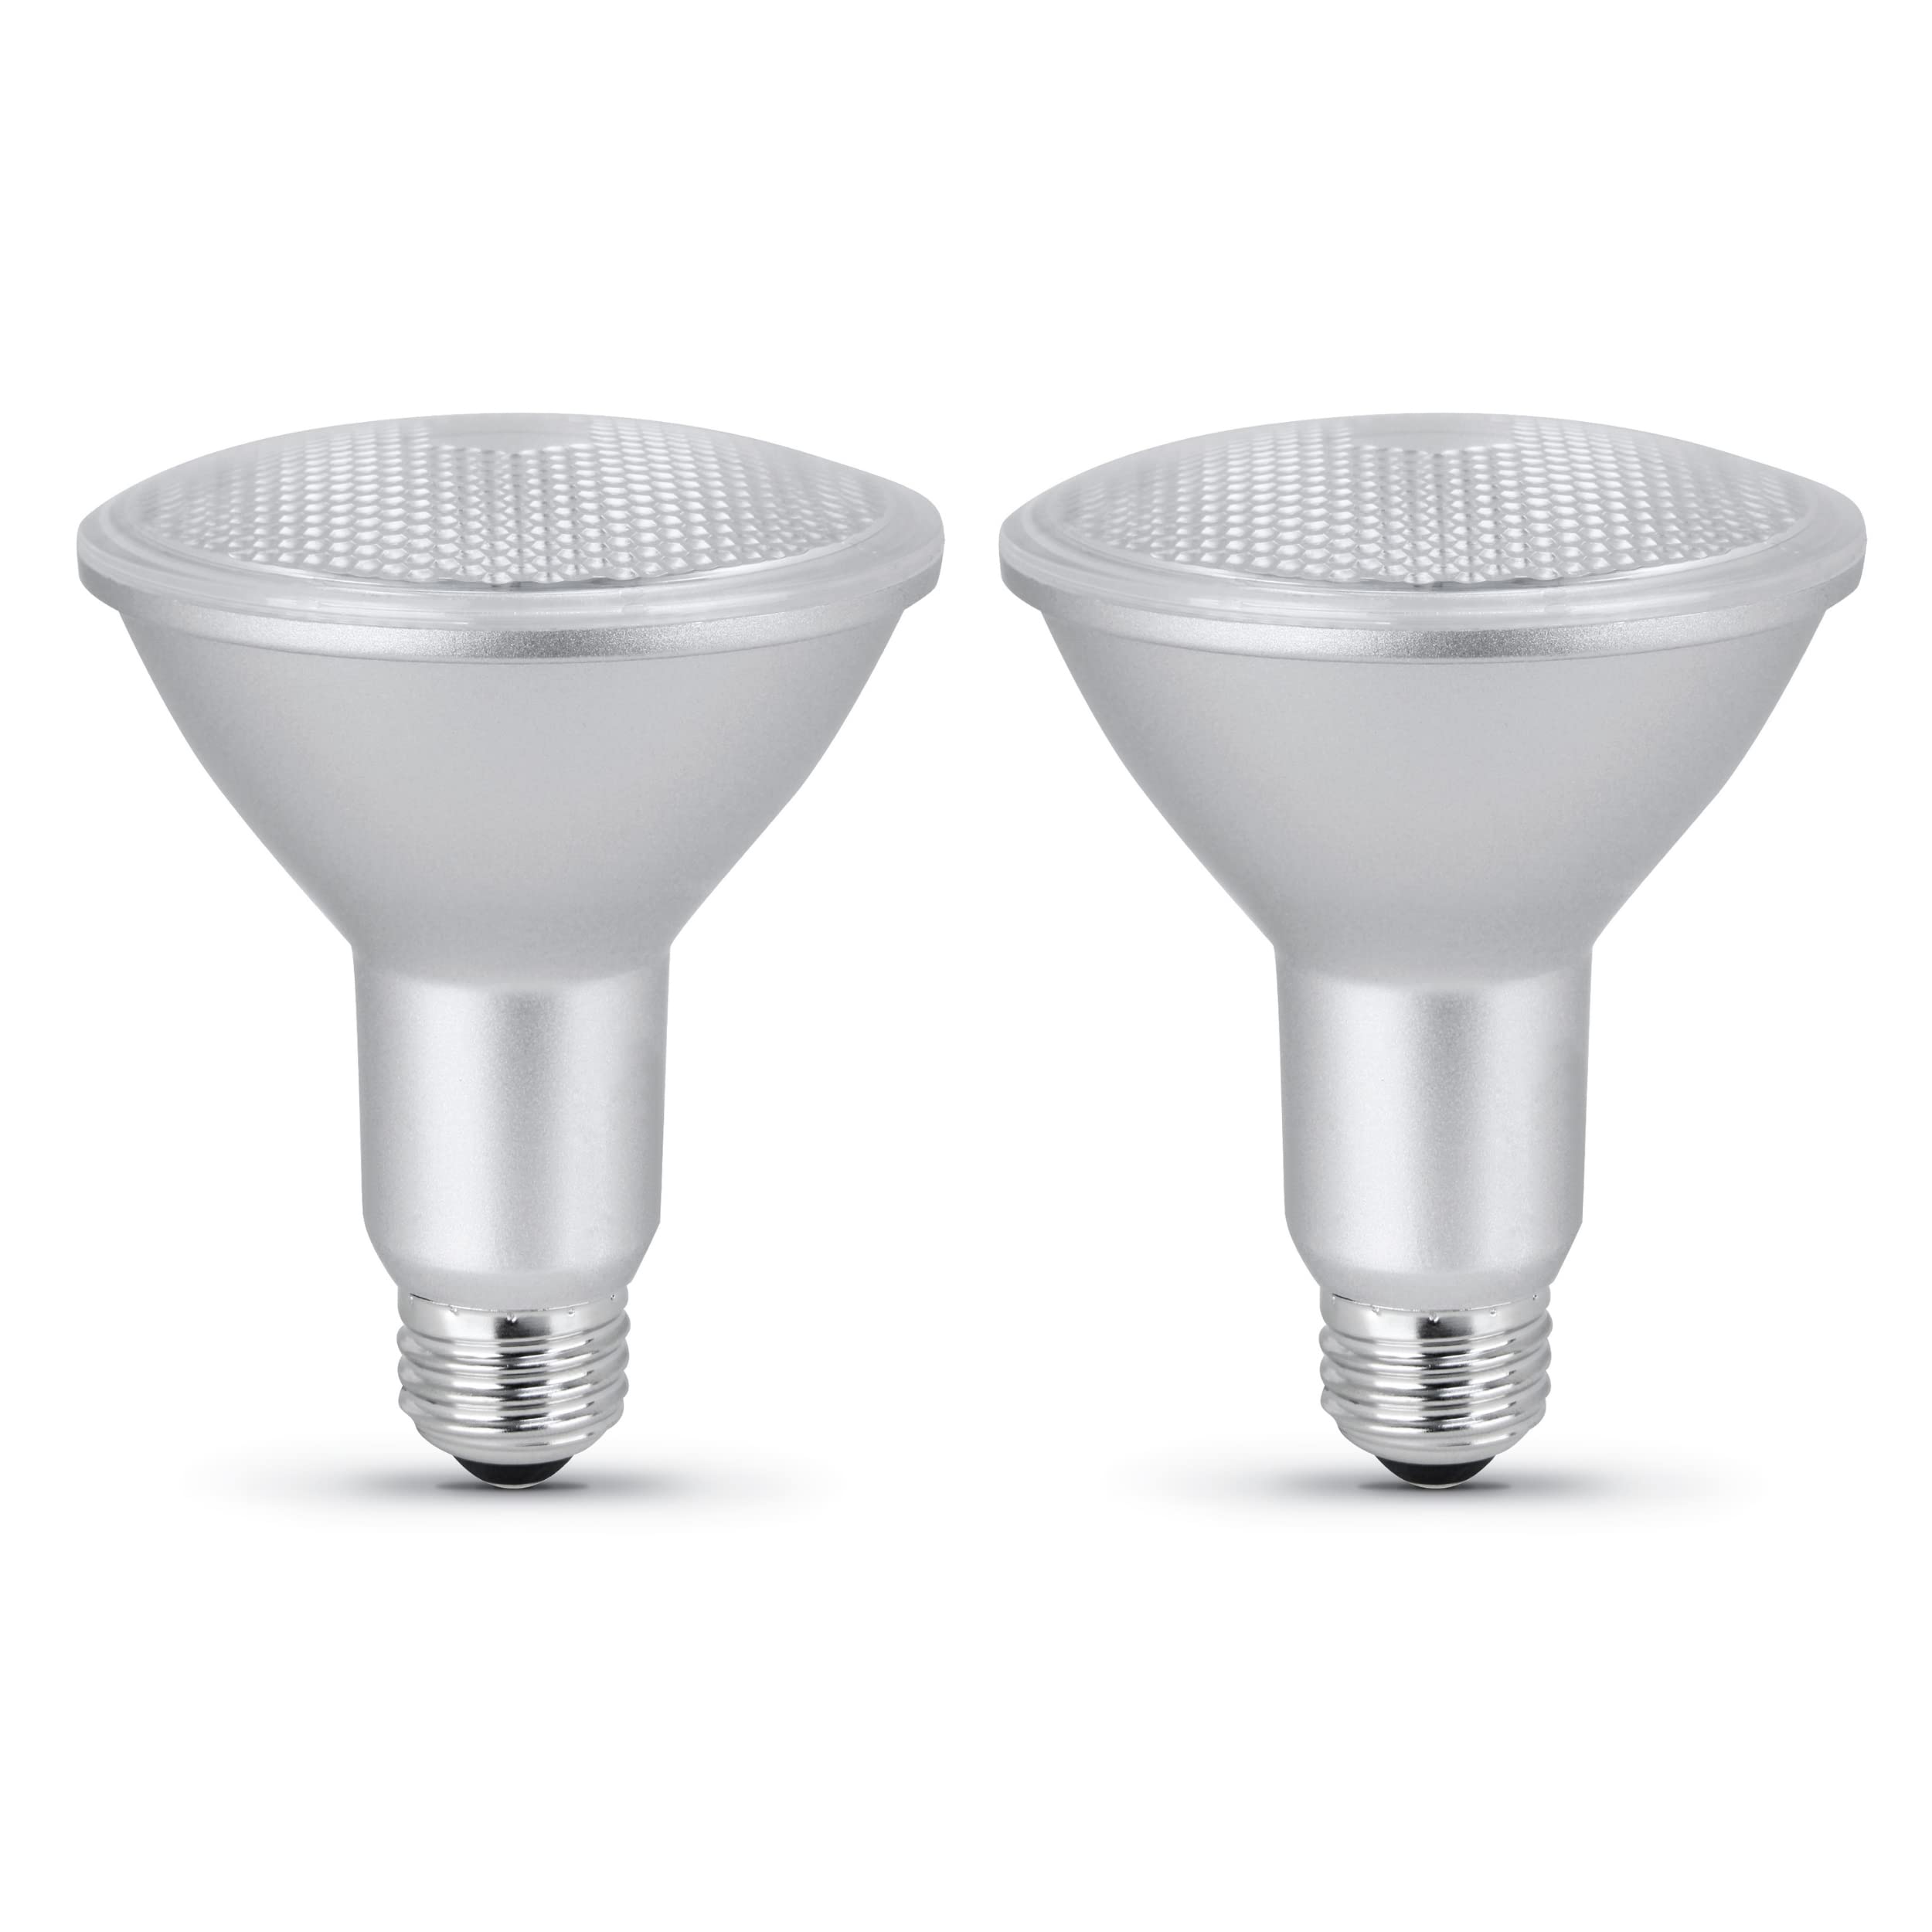 Feit Electric LED PAR30L Bulbs, 75W Equivalent, Dimmable, 3000K Bright White, 750 Lumens, 22 Year Lifetime, E26 Base, PAR30 Flood Lights, Spotlight Bulb,Weatherproof, 2 Pack, PAR30LDM/930CA/2